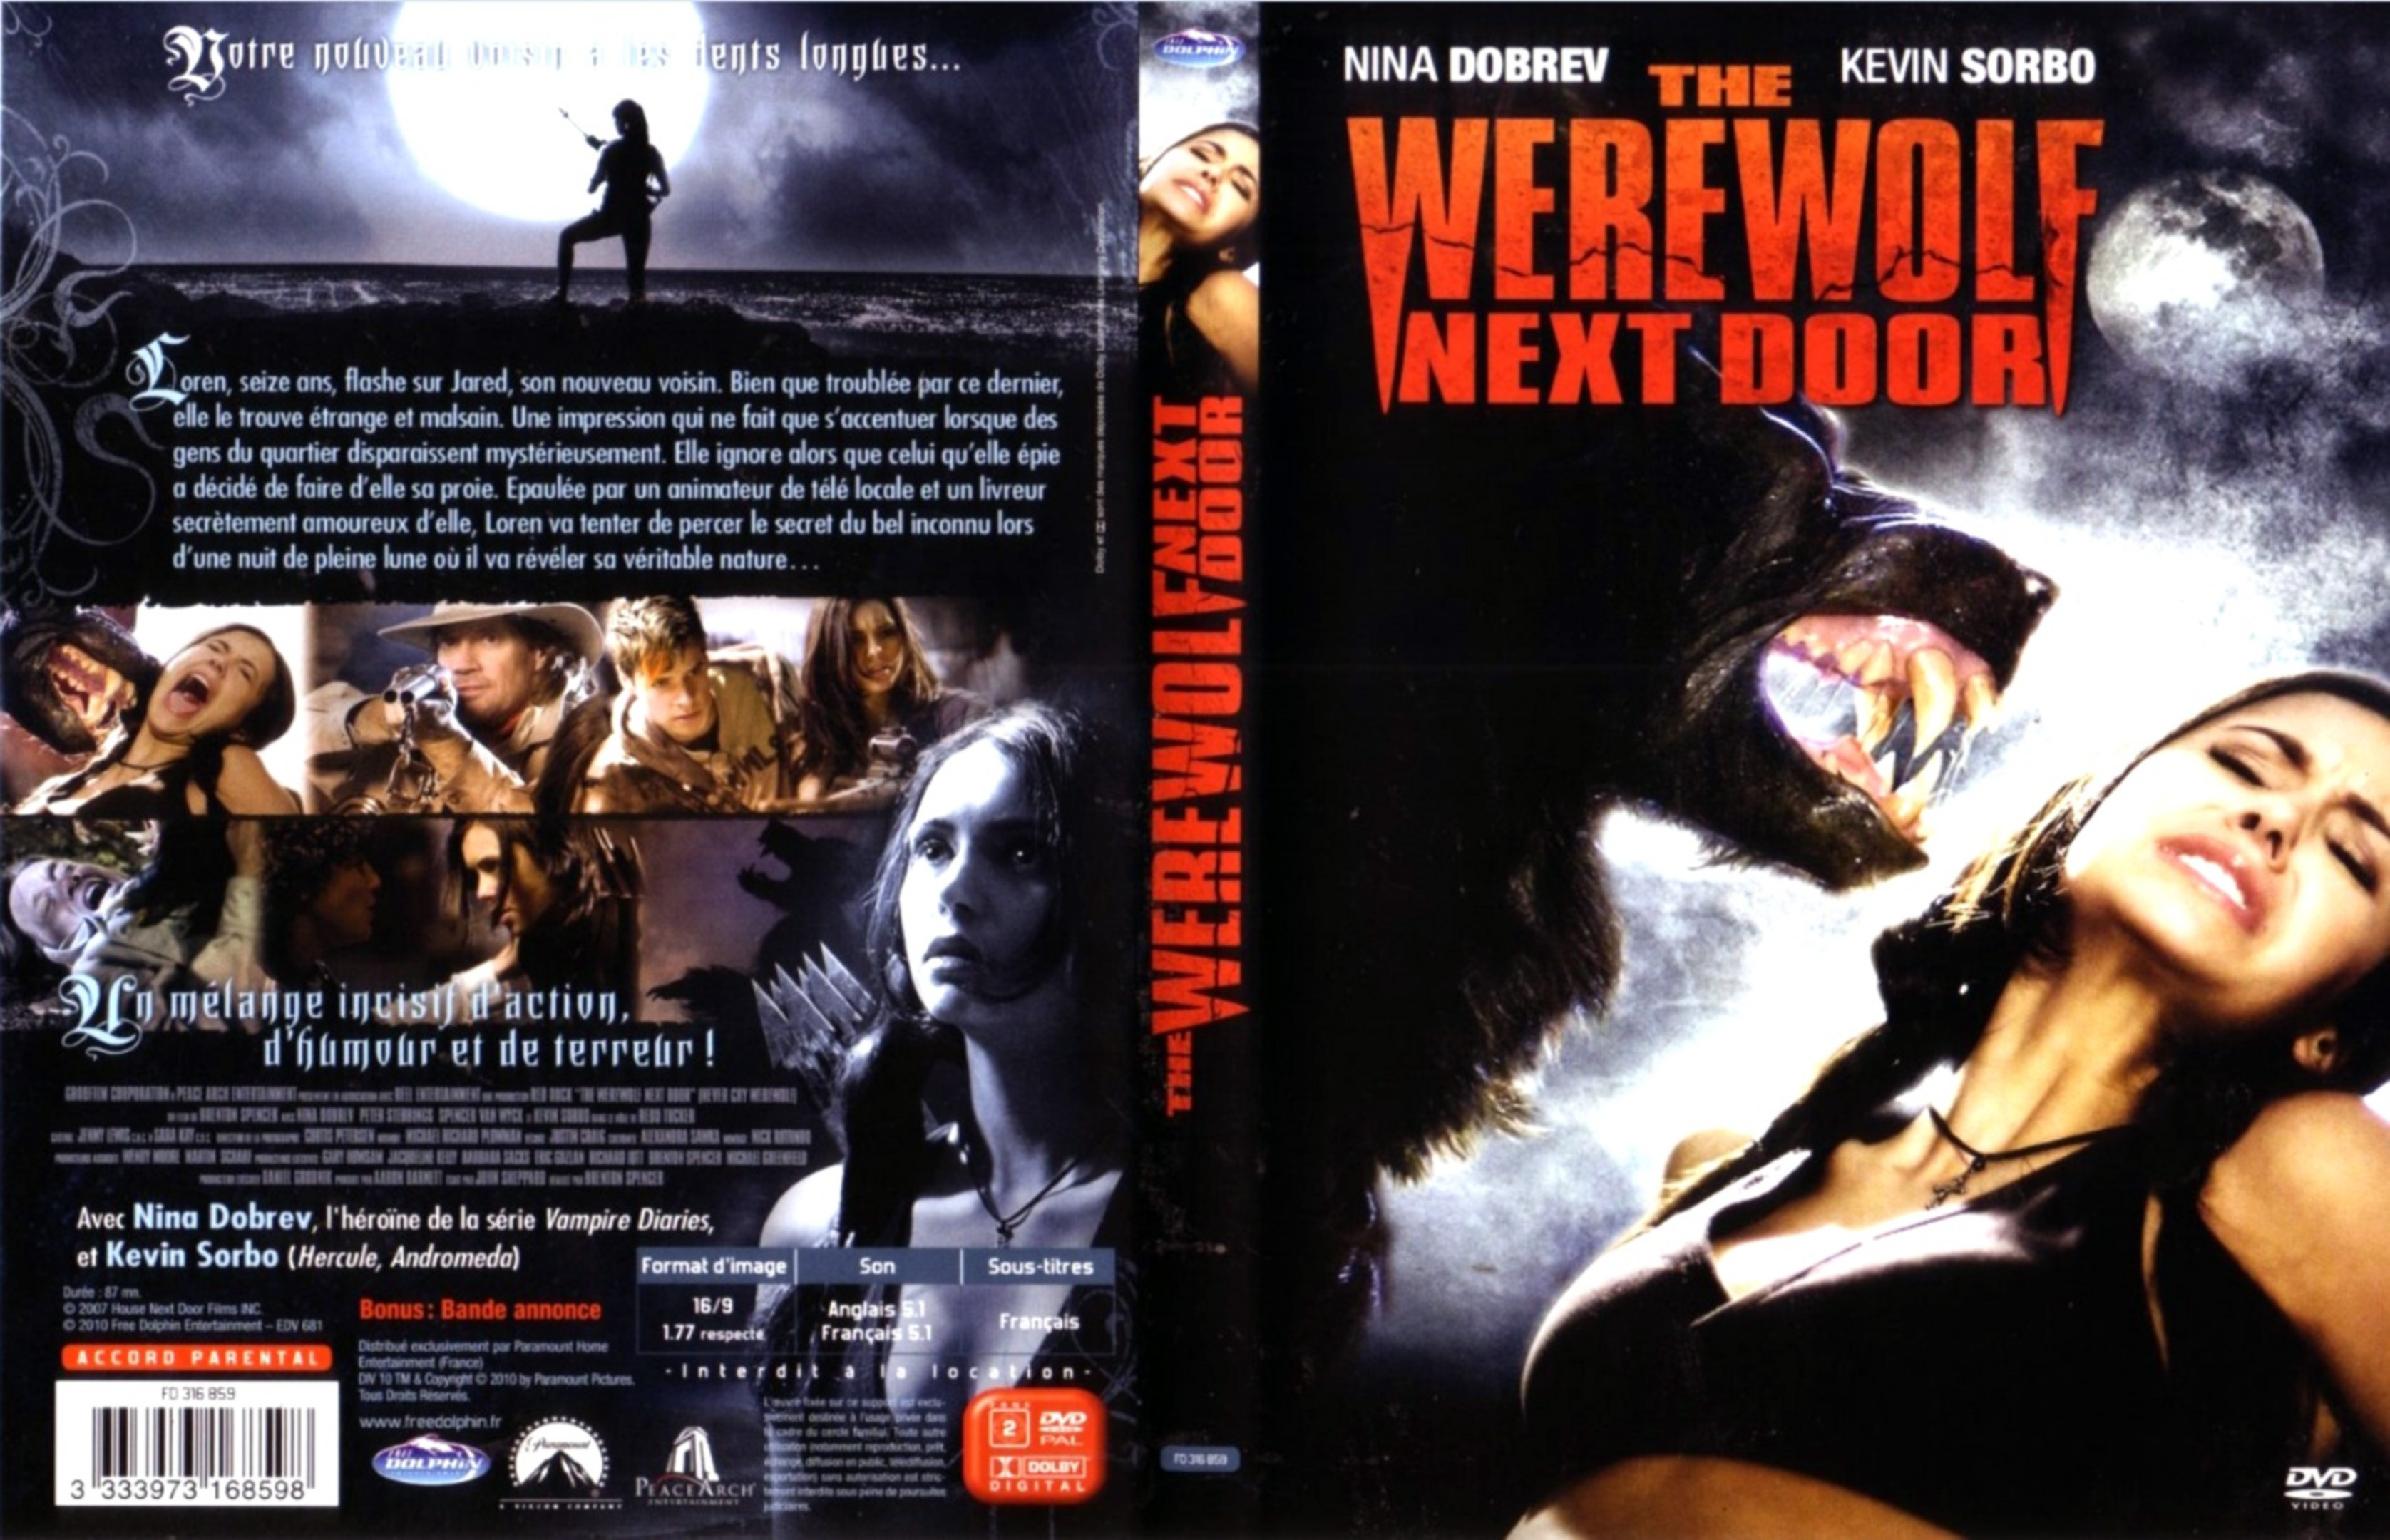 Jaquette DVD The werewolf next door